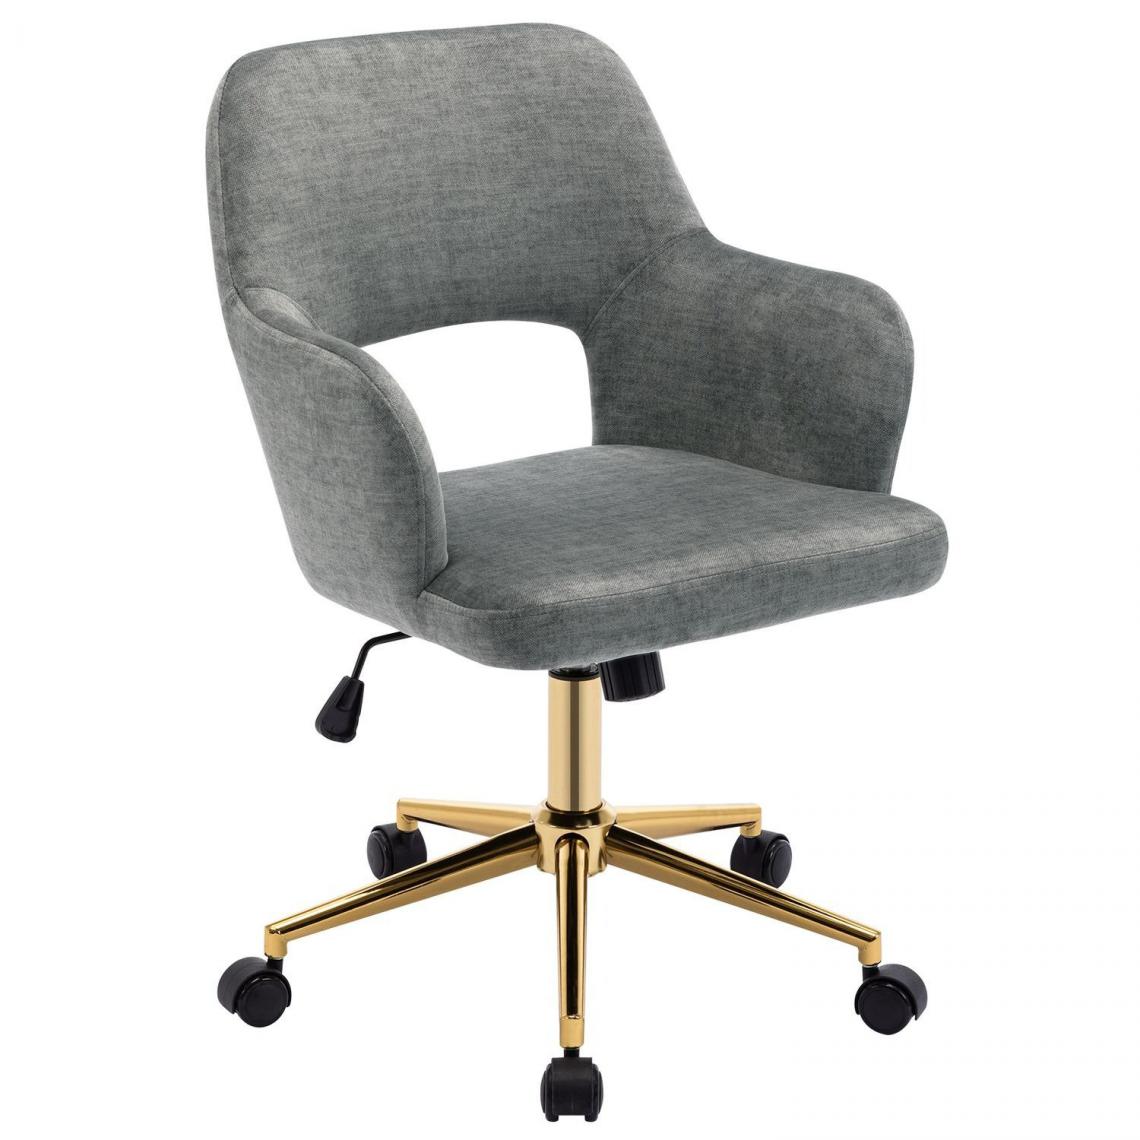 Decoshop26 - Chaise fauteuil de bureau pivotante sur roulettes en tissu velours gris pieds métal doré BUR09098 - Bureaux